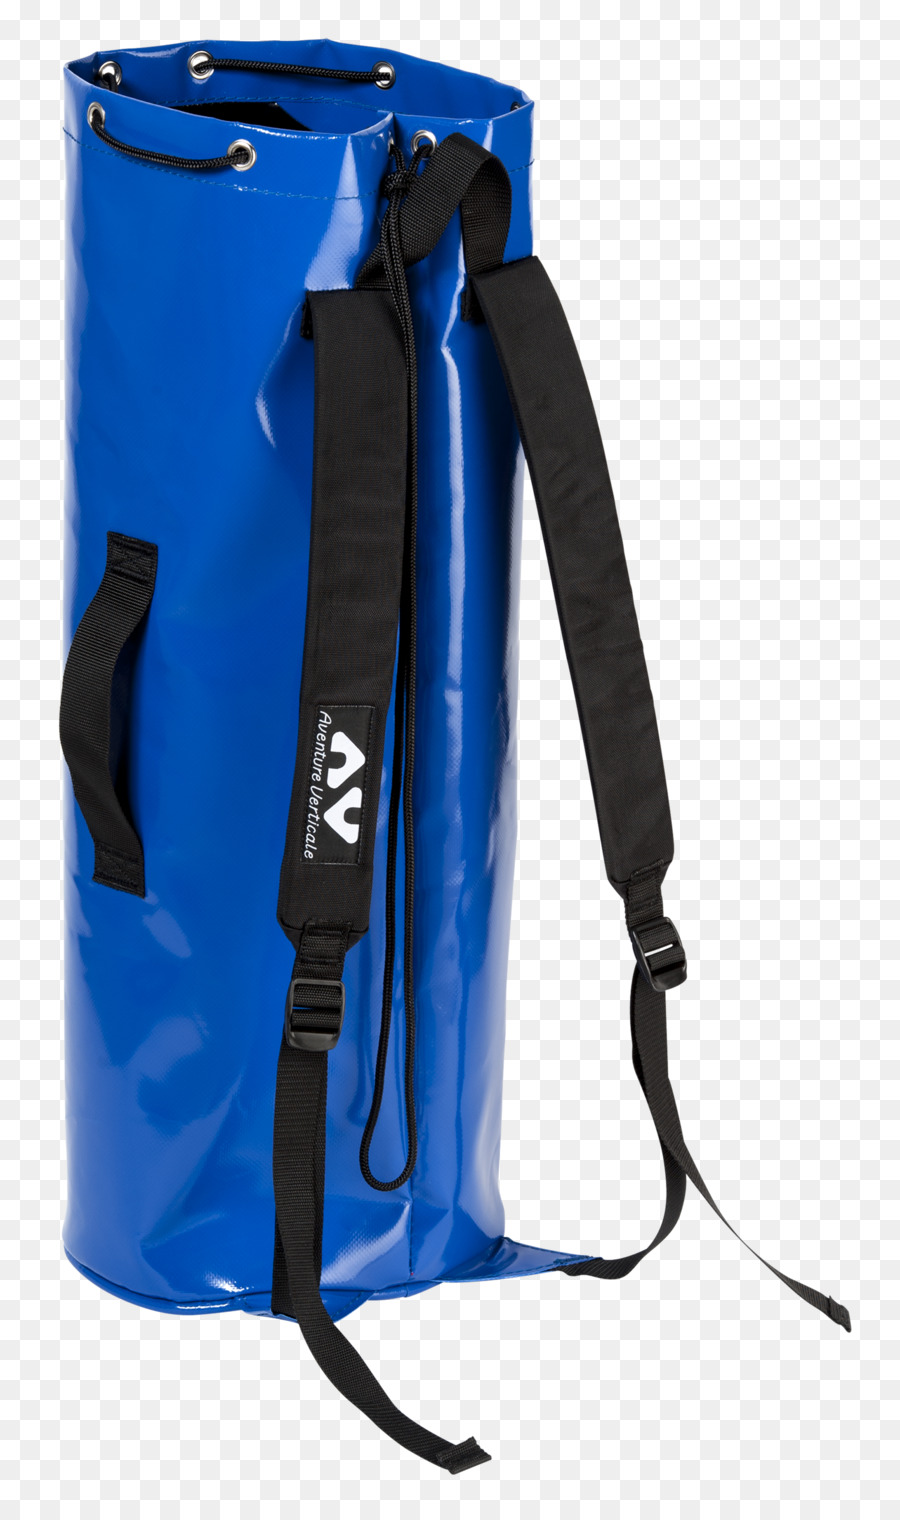 Bag Speleology ist mit dem Backpack höhlenforschung - Tasche